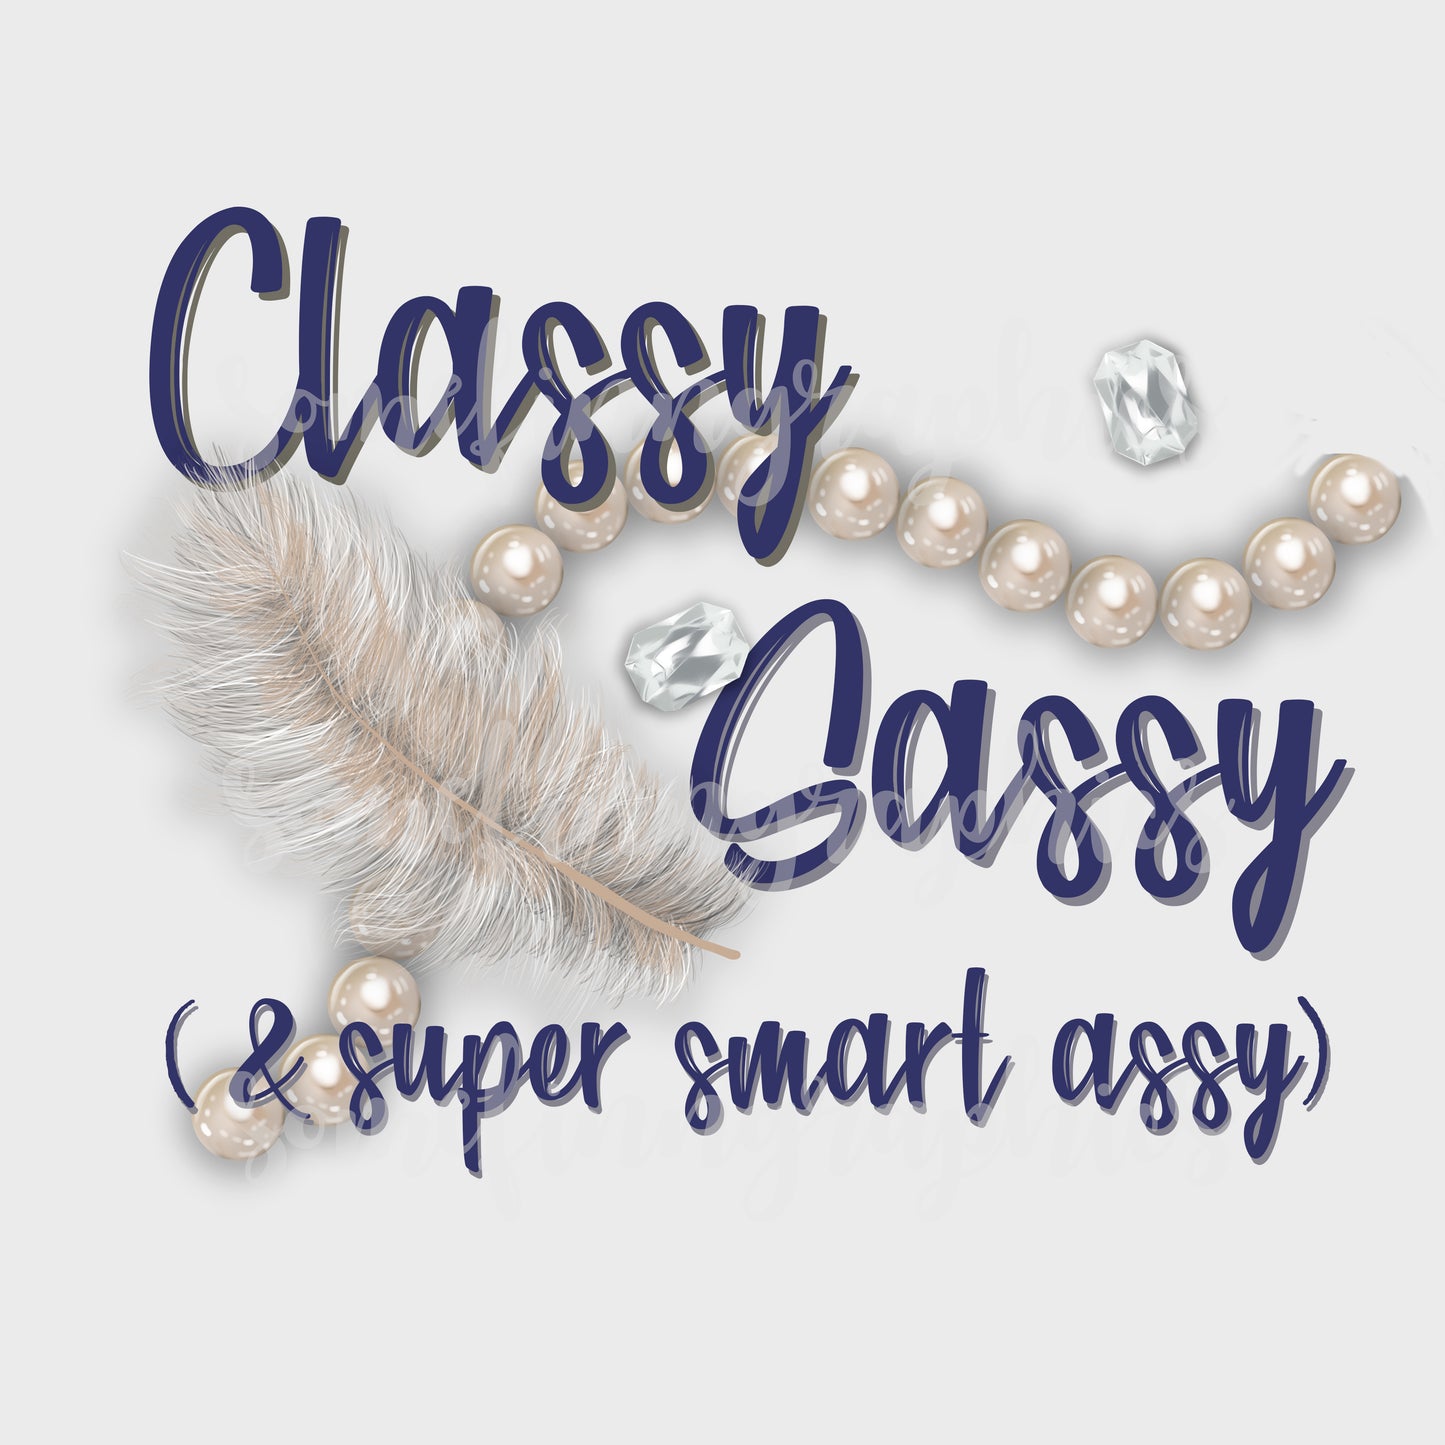 Sassy Classy Bad Assy Sub